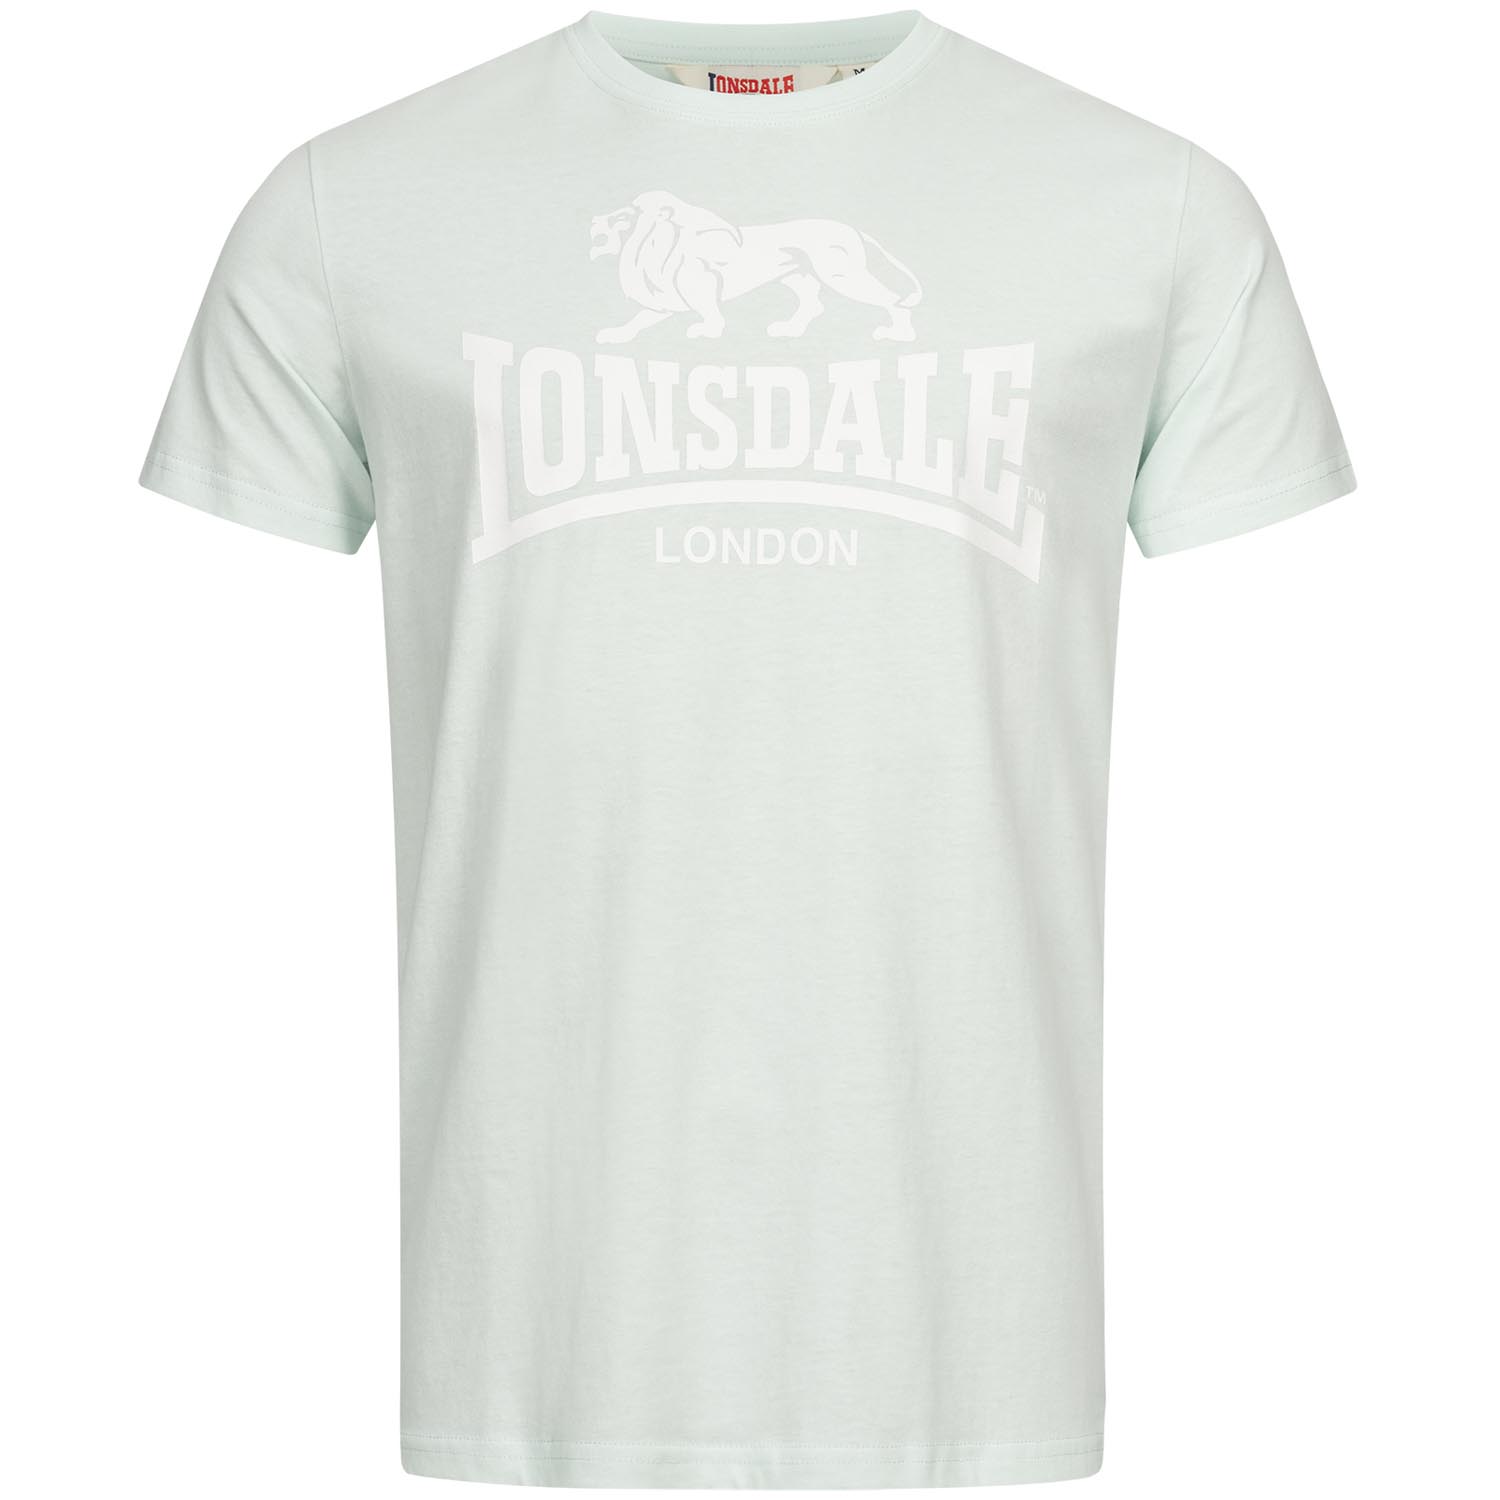 Lonsdale T-Shirt, St Erney, mint